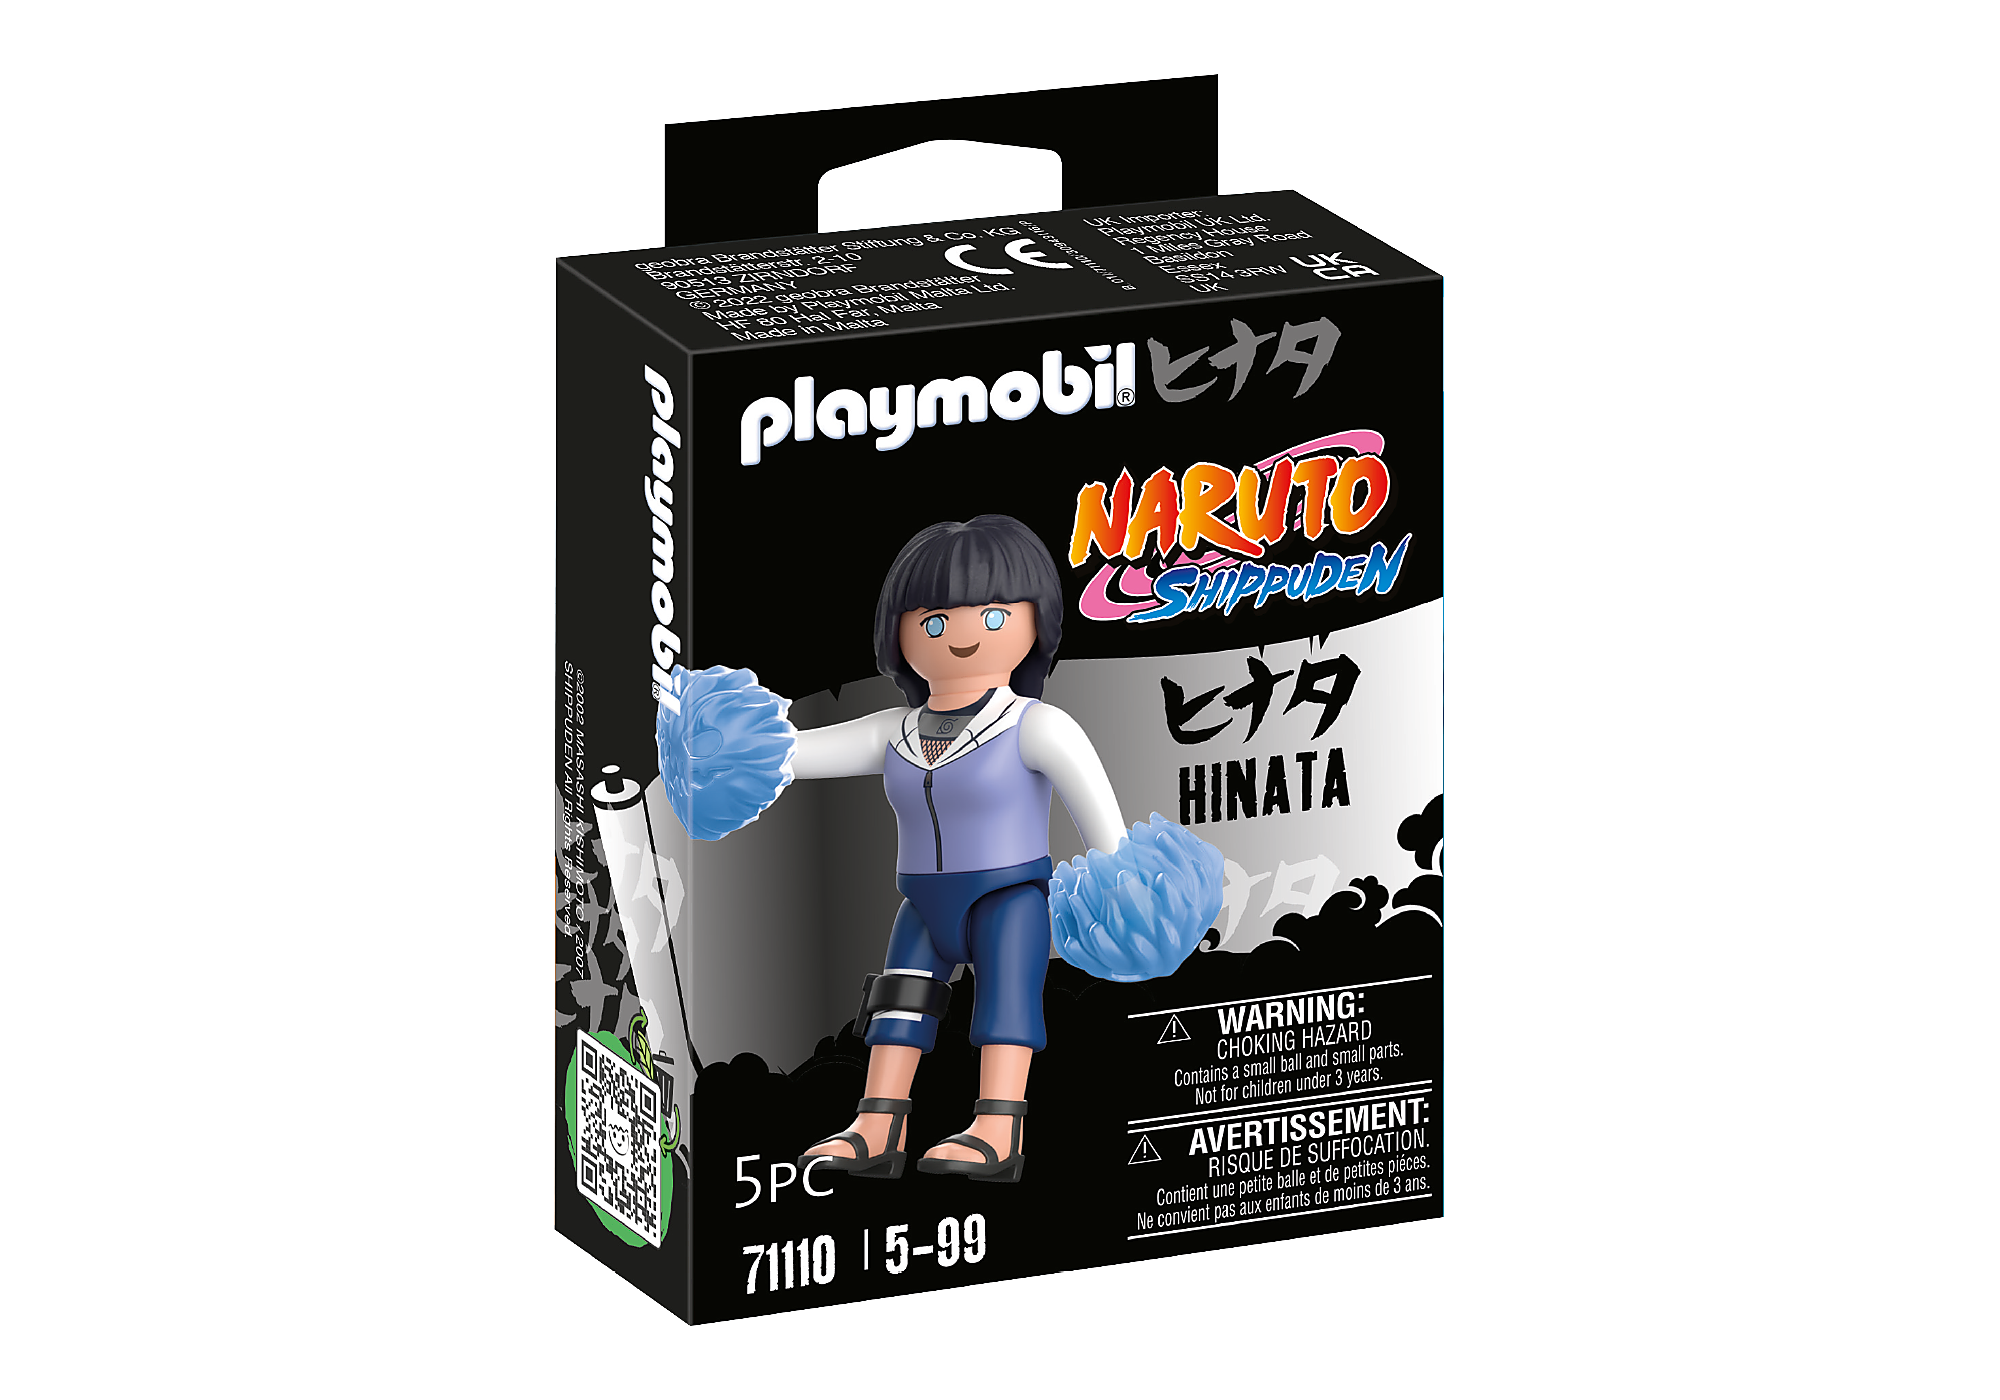 Playmobil Naruto Hinata